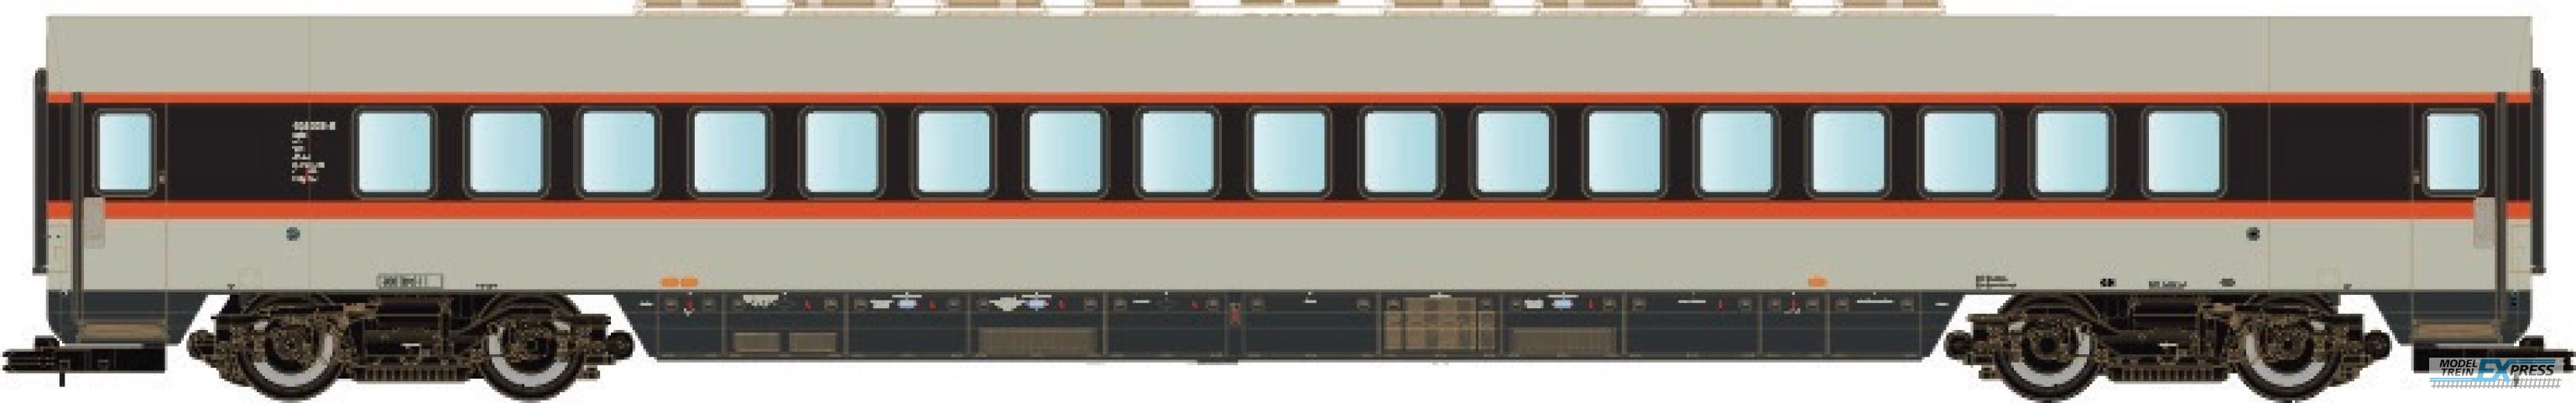 LS Models 16504 DB ET 403, coach-rijtuig, grijs/rood/zwart, IC, versterkingswagen  /  Ep. IVa  /  DB  /  HO  /  AC  /  1 P.